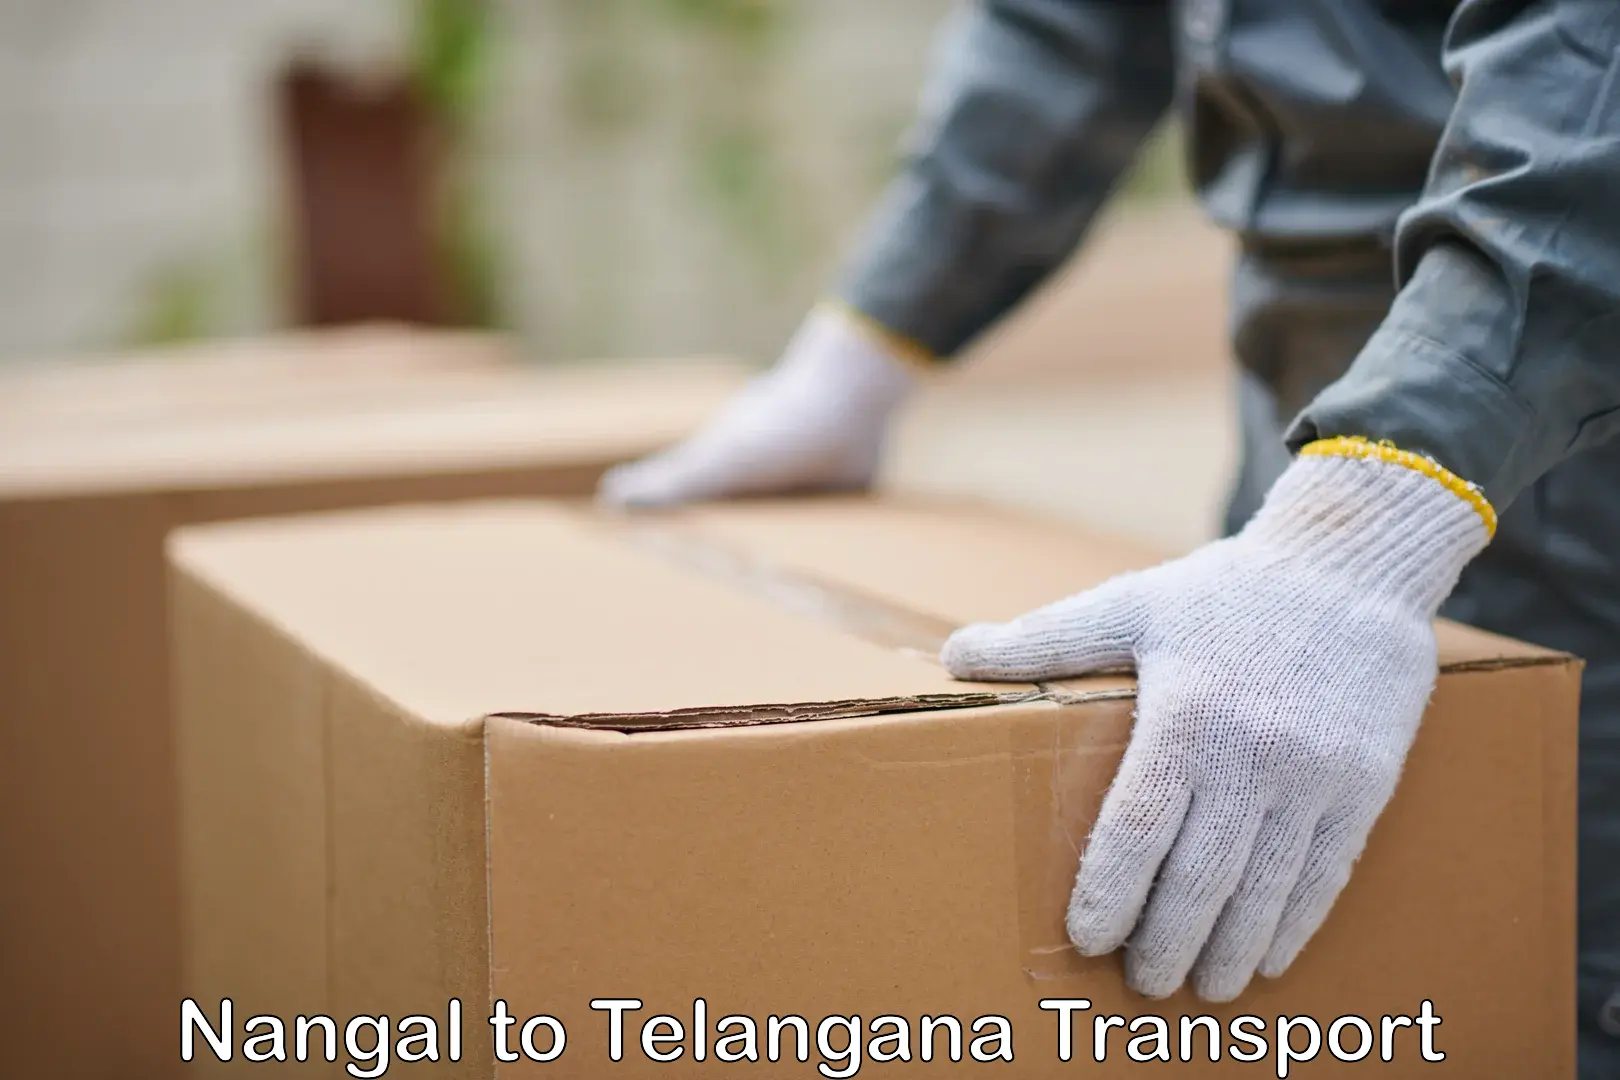 Online transport service Nangal to Telangana